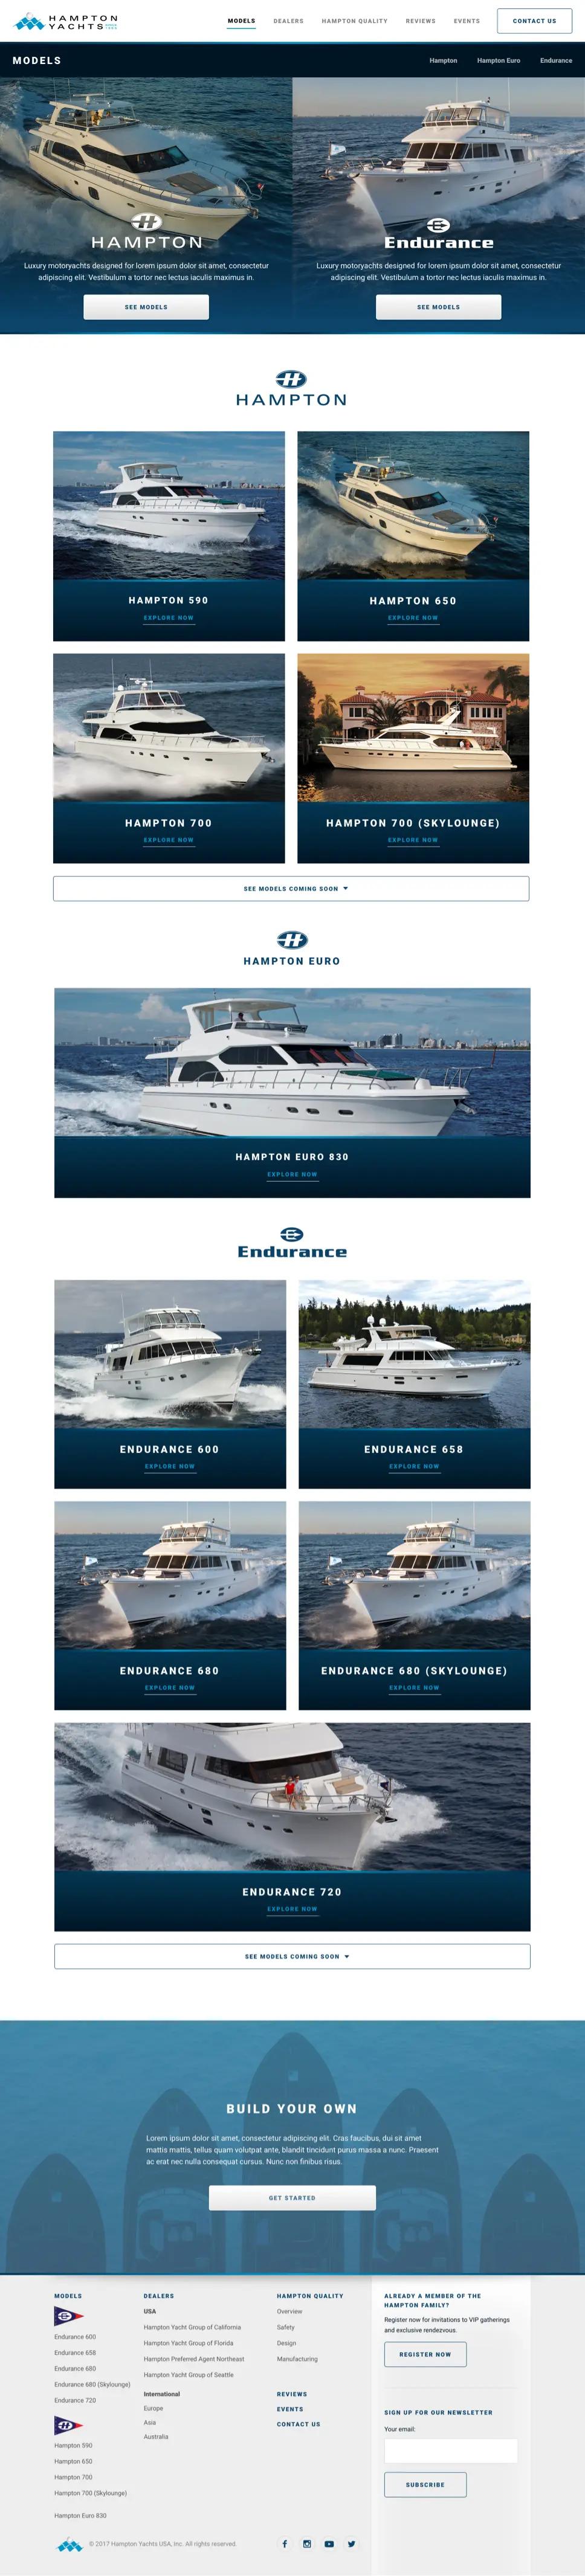 A screenshot of Hampton Yachts' "Models" page.